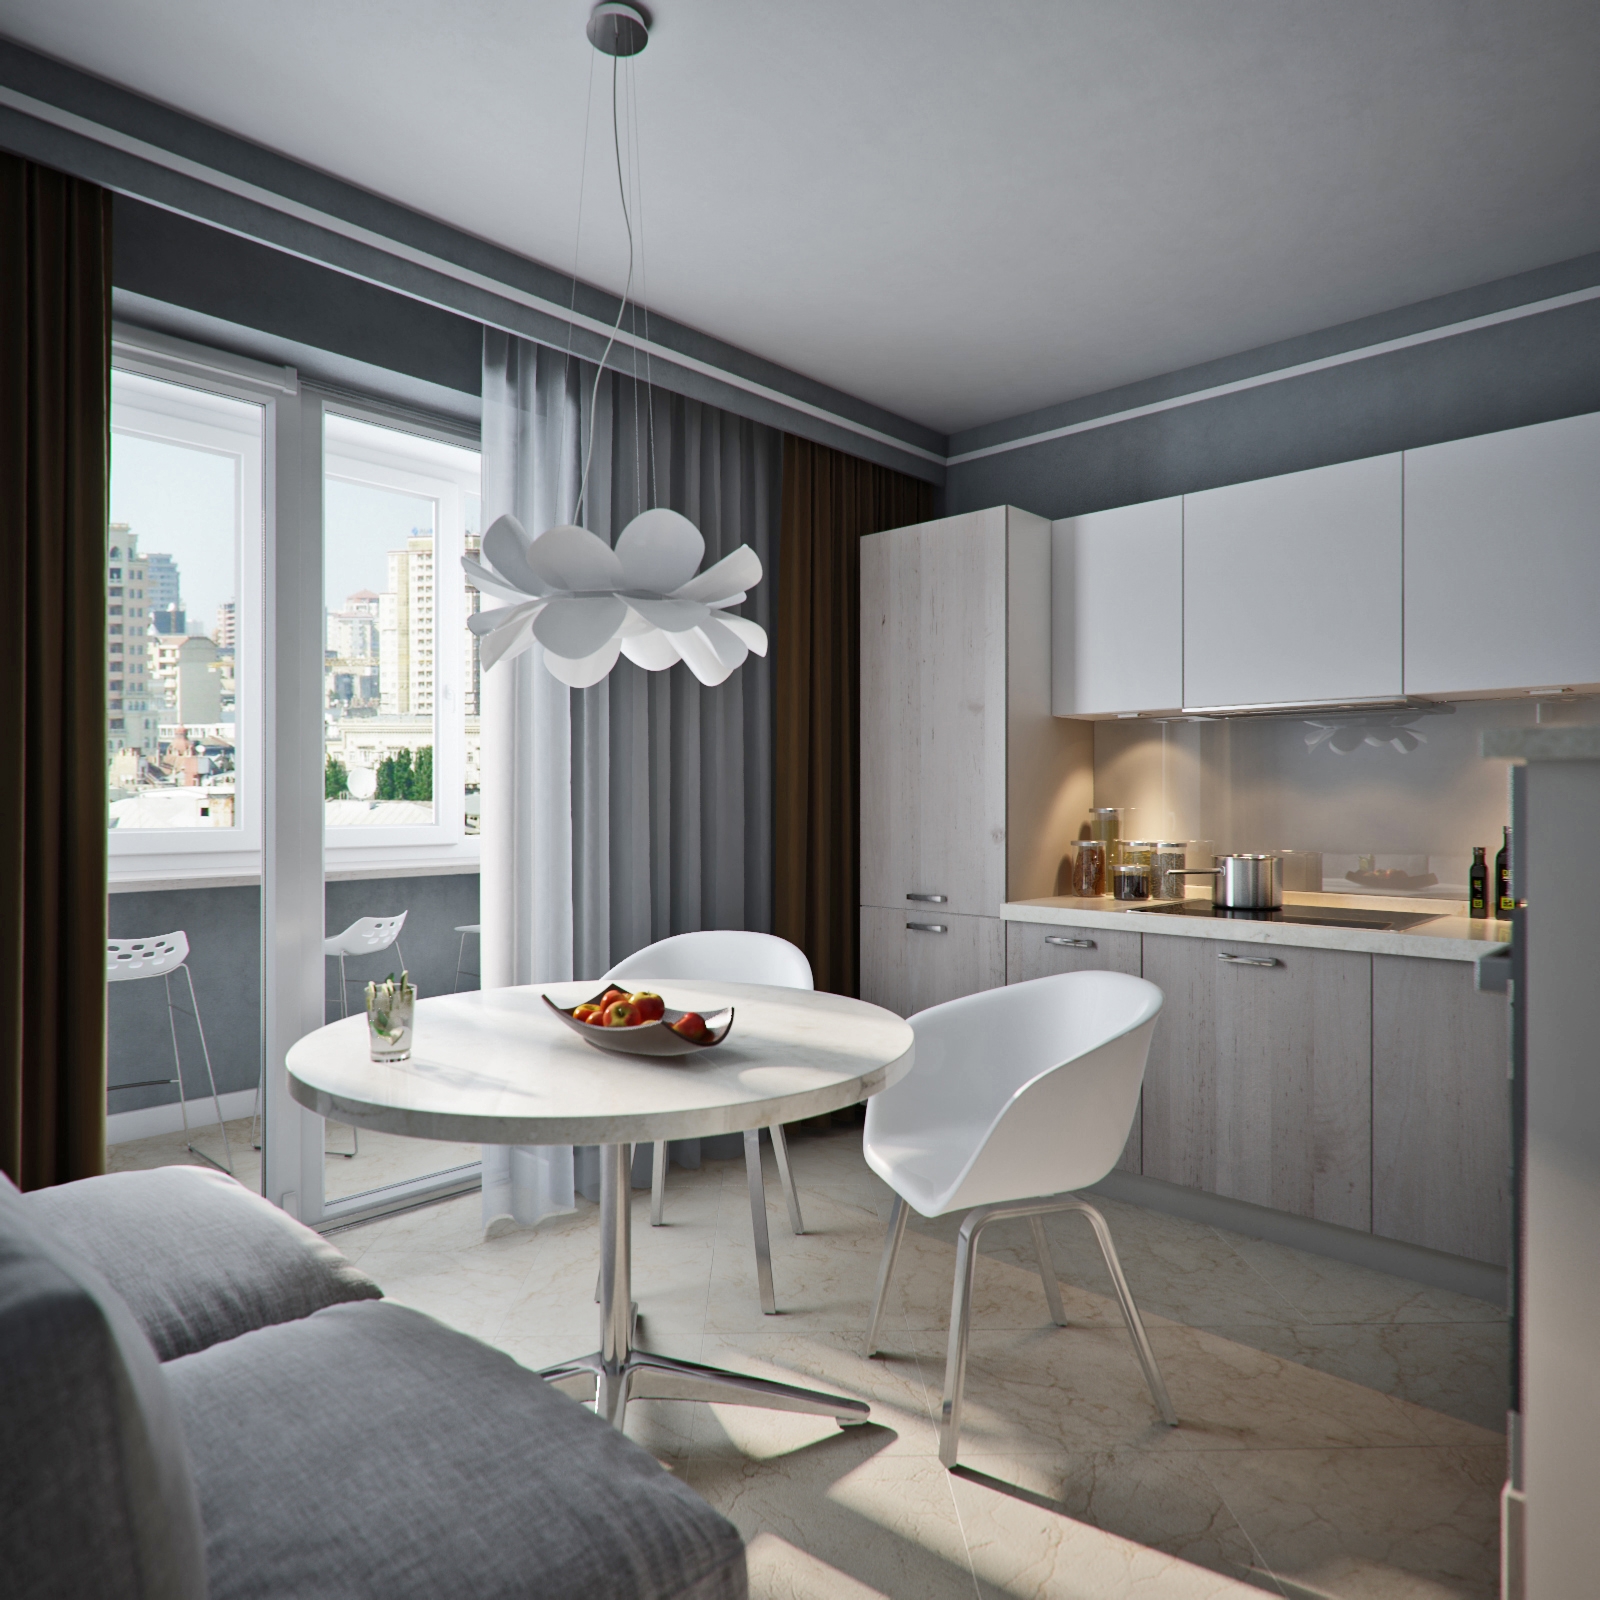 Дизайн кухни 8-12 кв.м. в квартире с балконом. топ-5 советов для объединение пространства + 100 фото